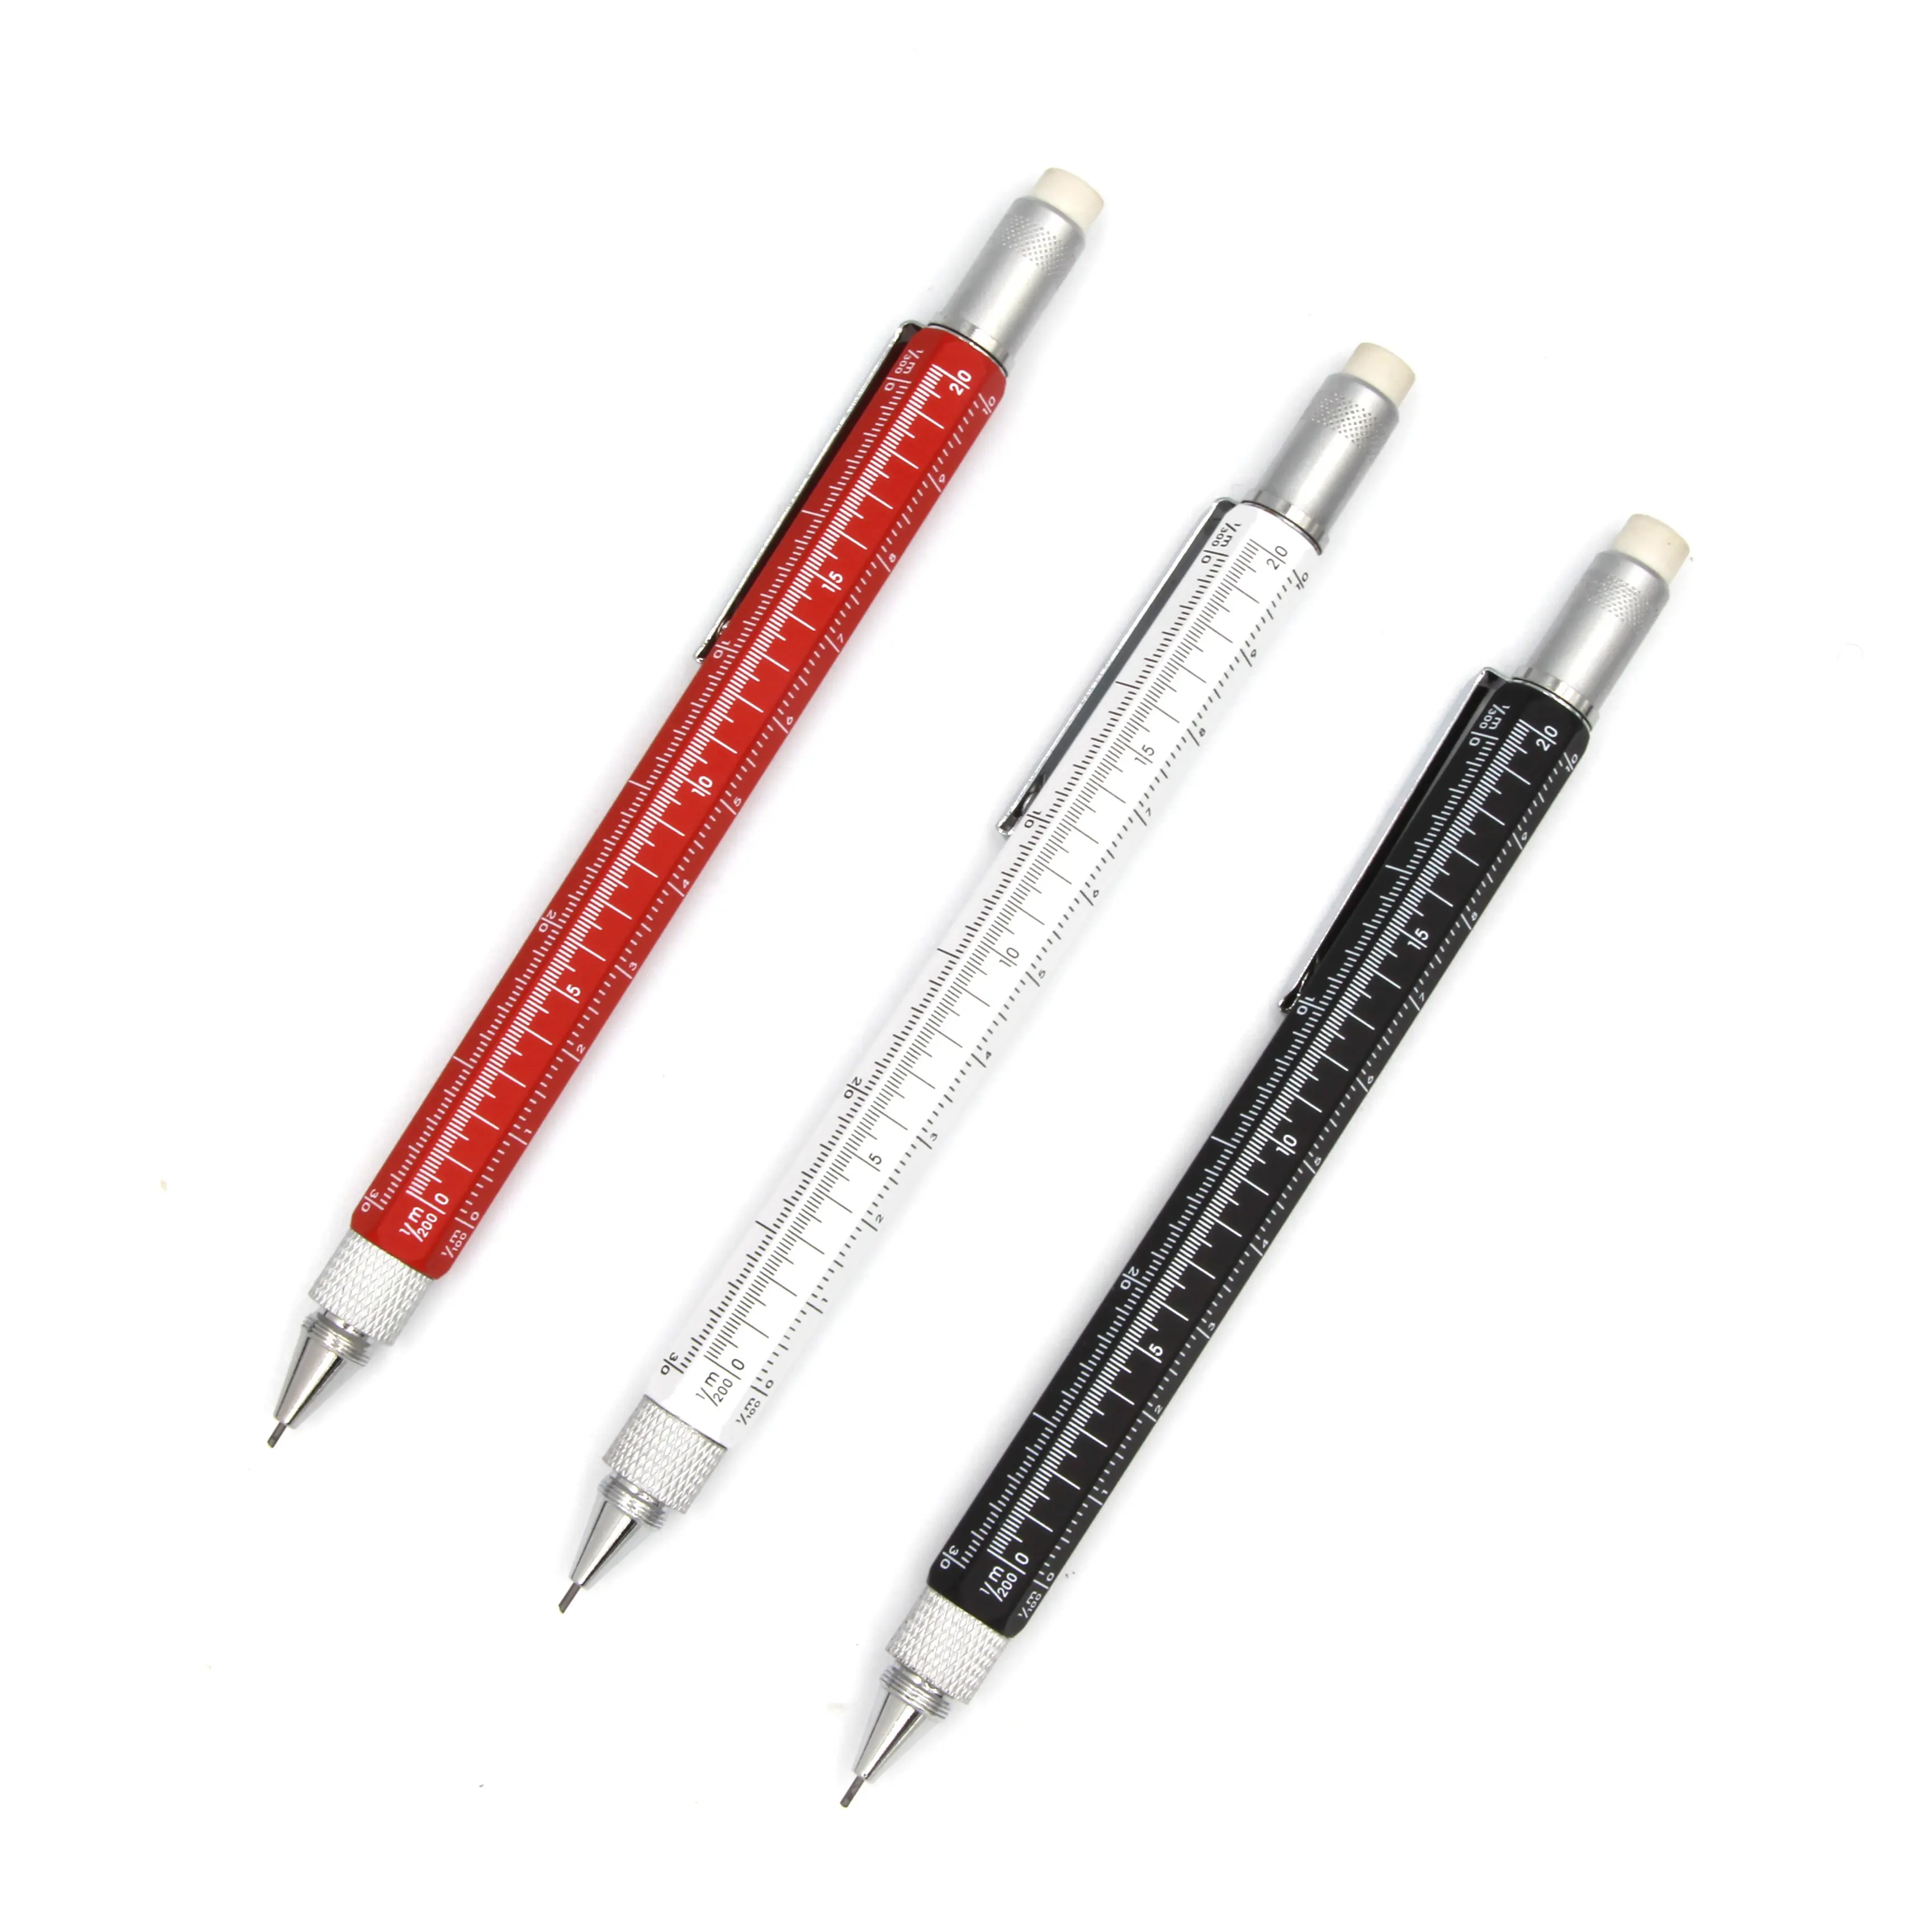 ดินสอเครื่องกล5ใน1ดินสอร่างอัตโนมัติ0.5มม. 0.7มม. พร้อมไขควงสำหรับสำนักงานโรงเรียนการเขียนร่าง